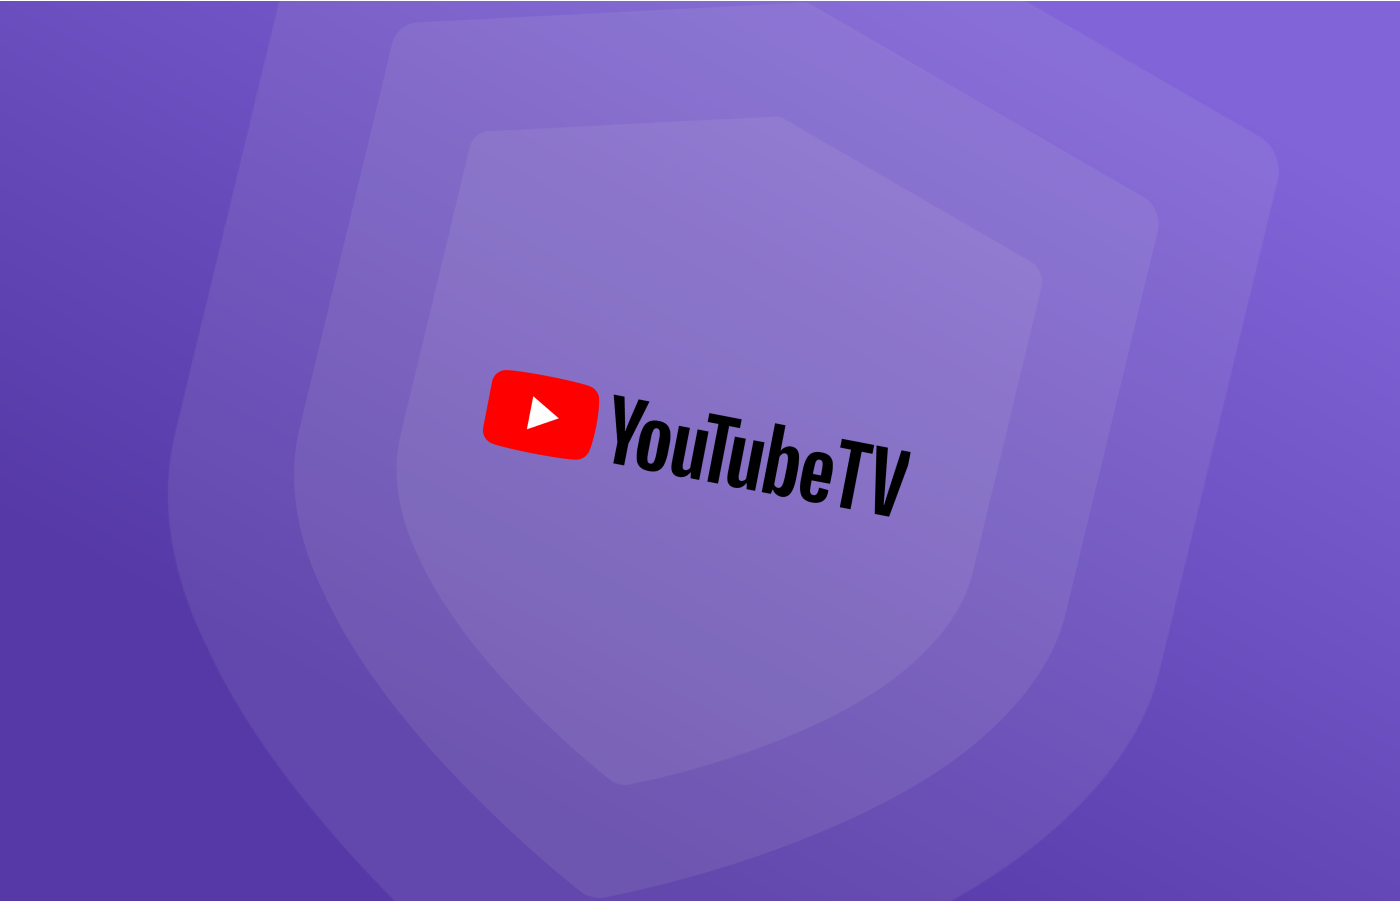 Best VPNs for Youtube TV